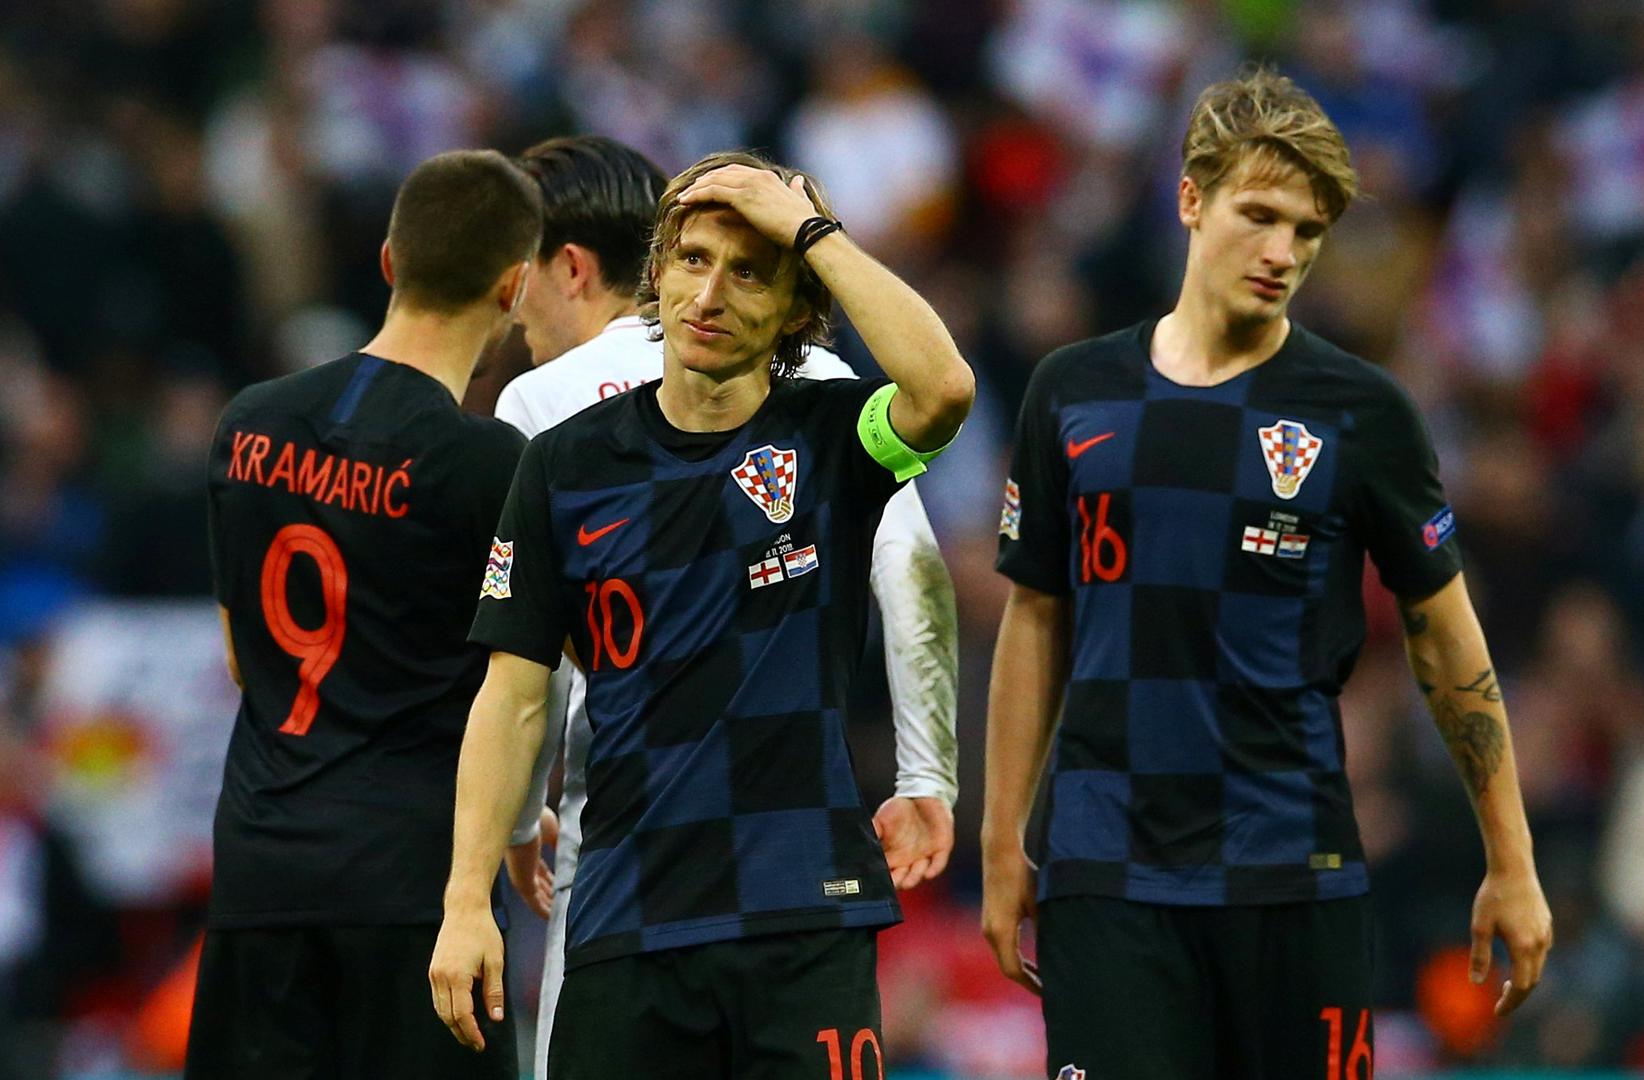 Nakon utakmice hrvatski nogometaši nisu skrivali tugu zbog poraza i ispadanja.